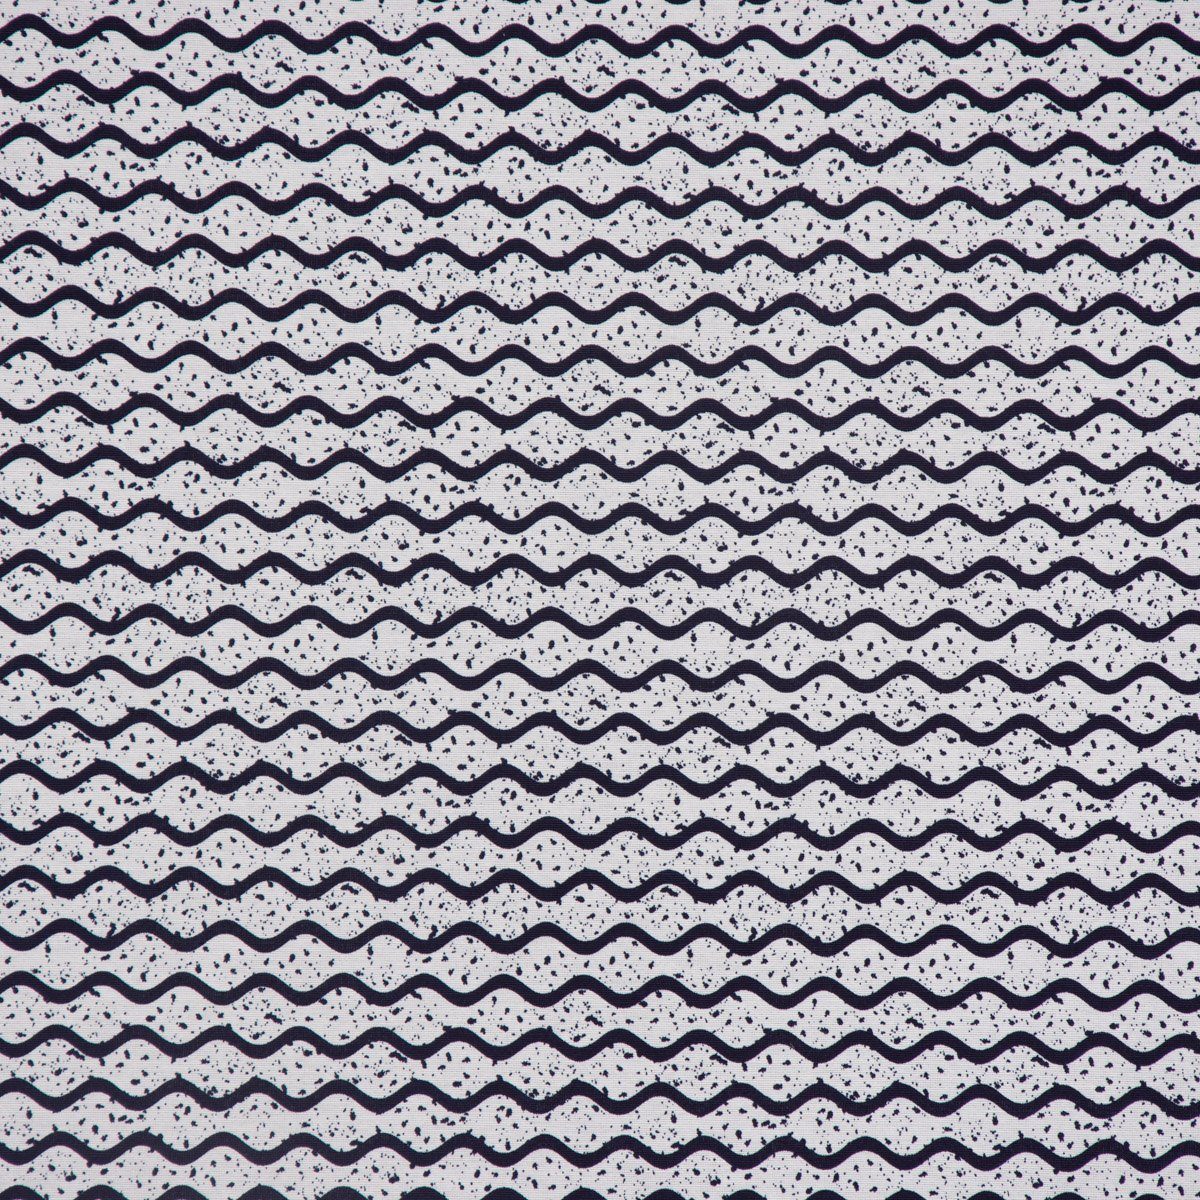 SCHÖNER LEBEN. Tischläufer dunkelblau weiß Punkte handmade Wellen 40x160cm, LEBEN. Tischläufer SCHÖNER